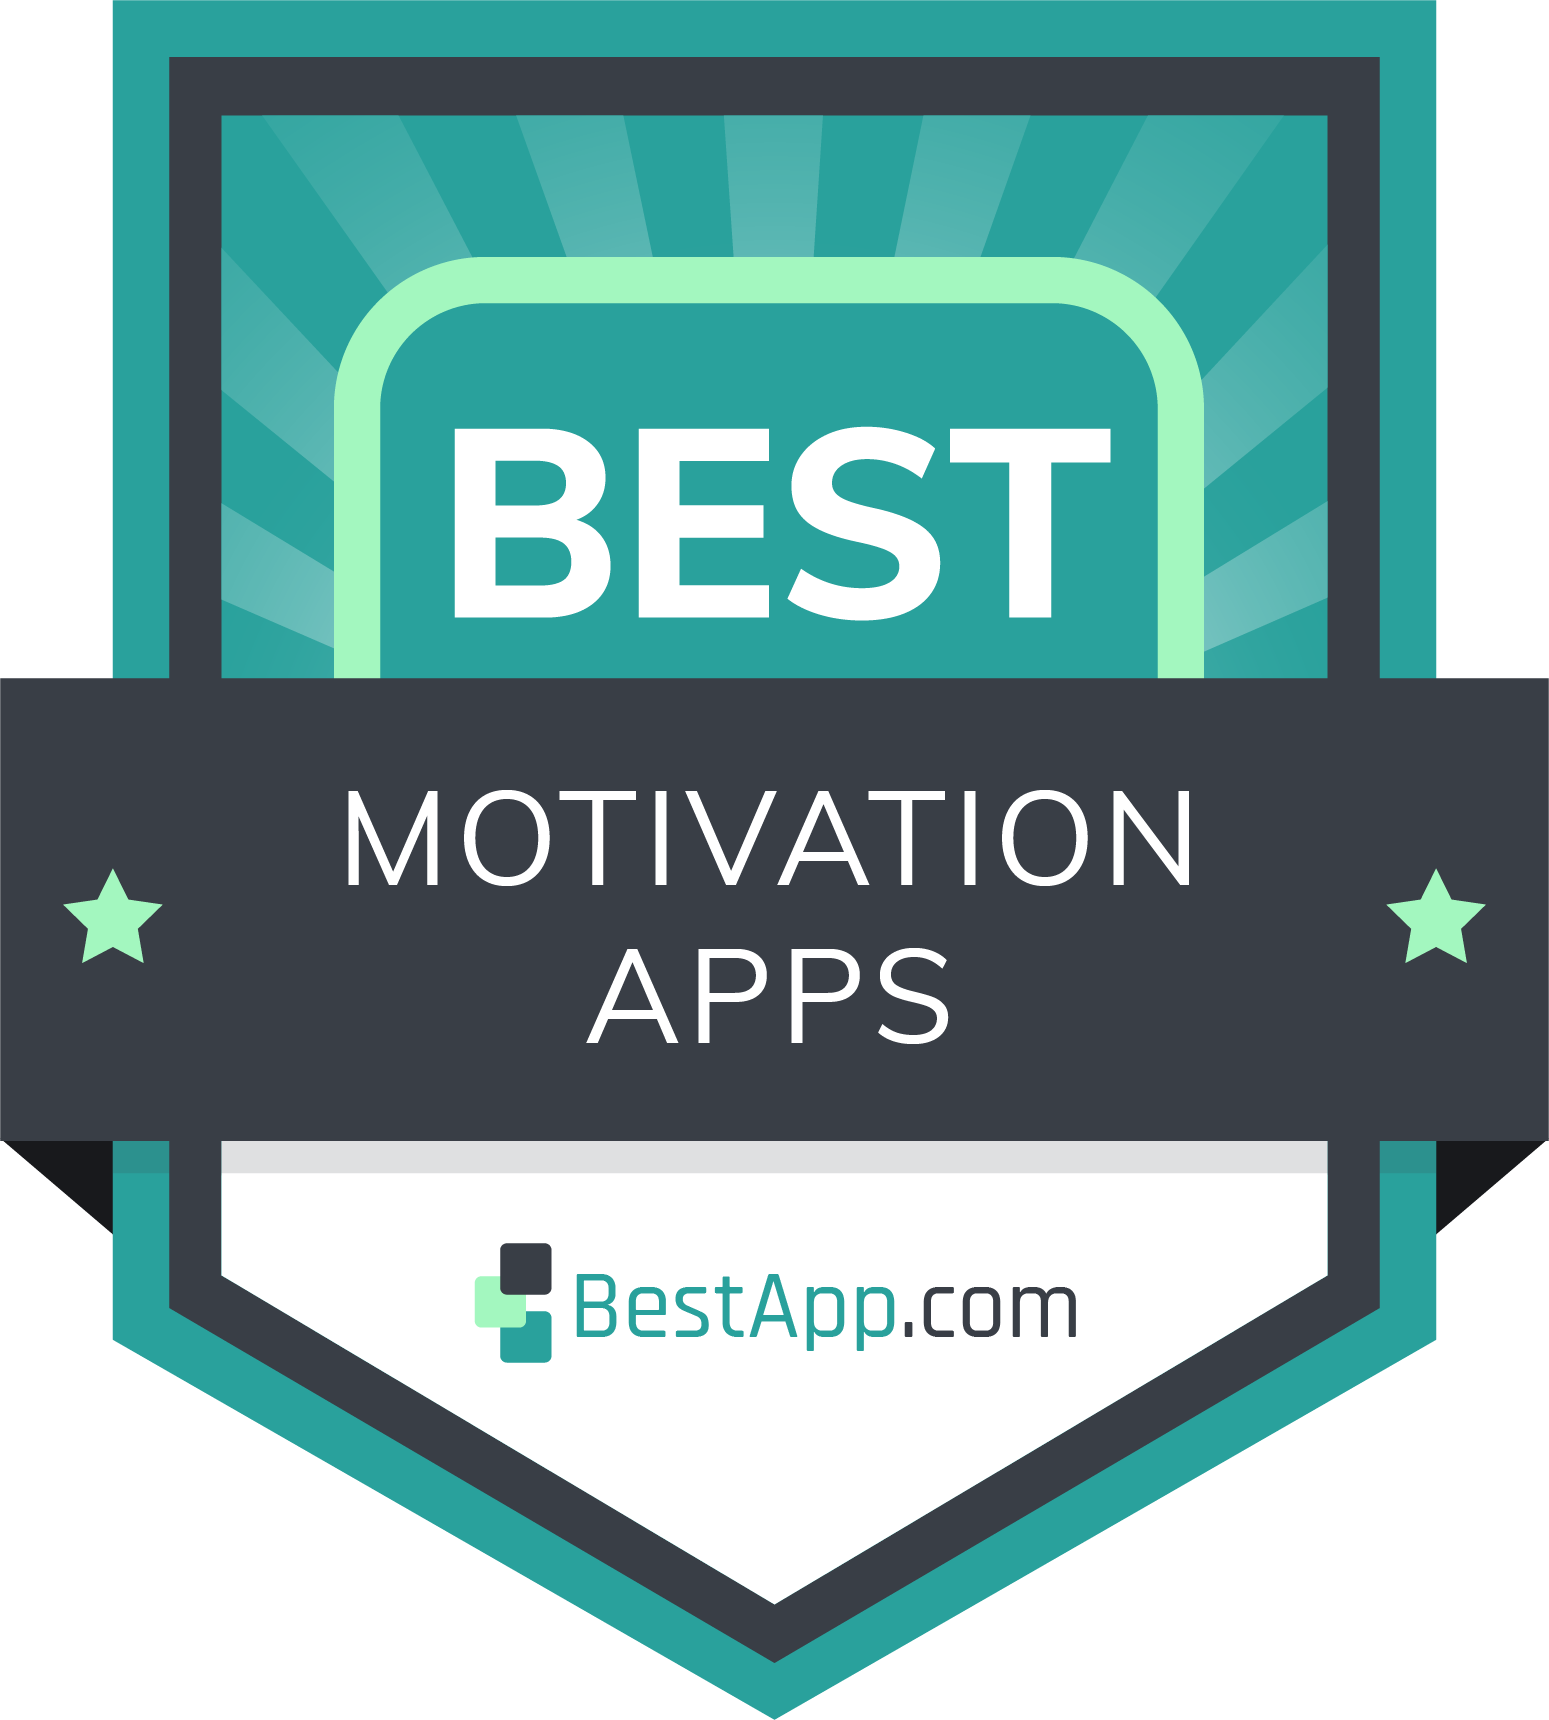 Best Motivation Apps Badge